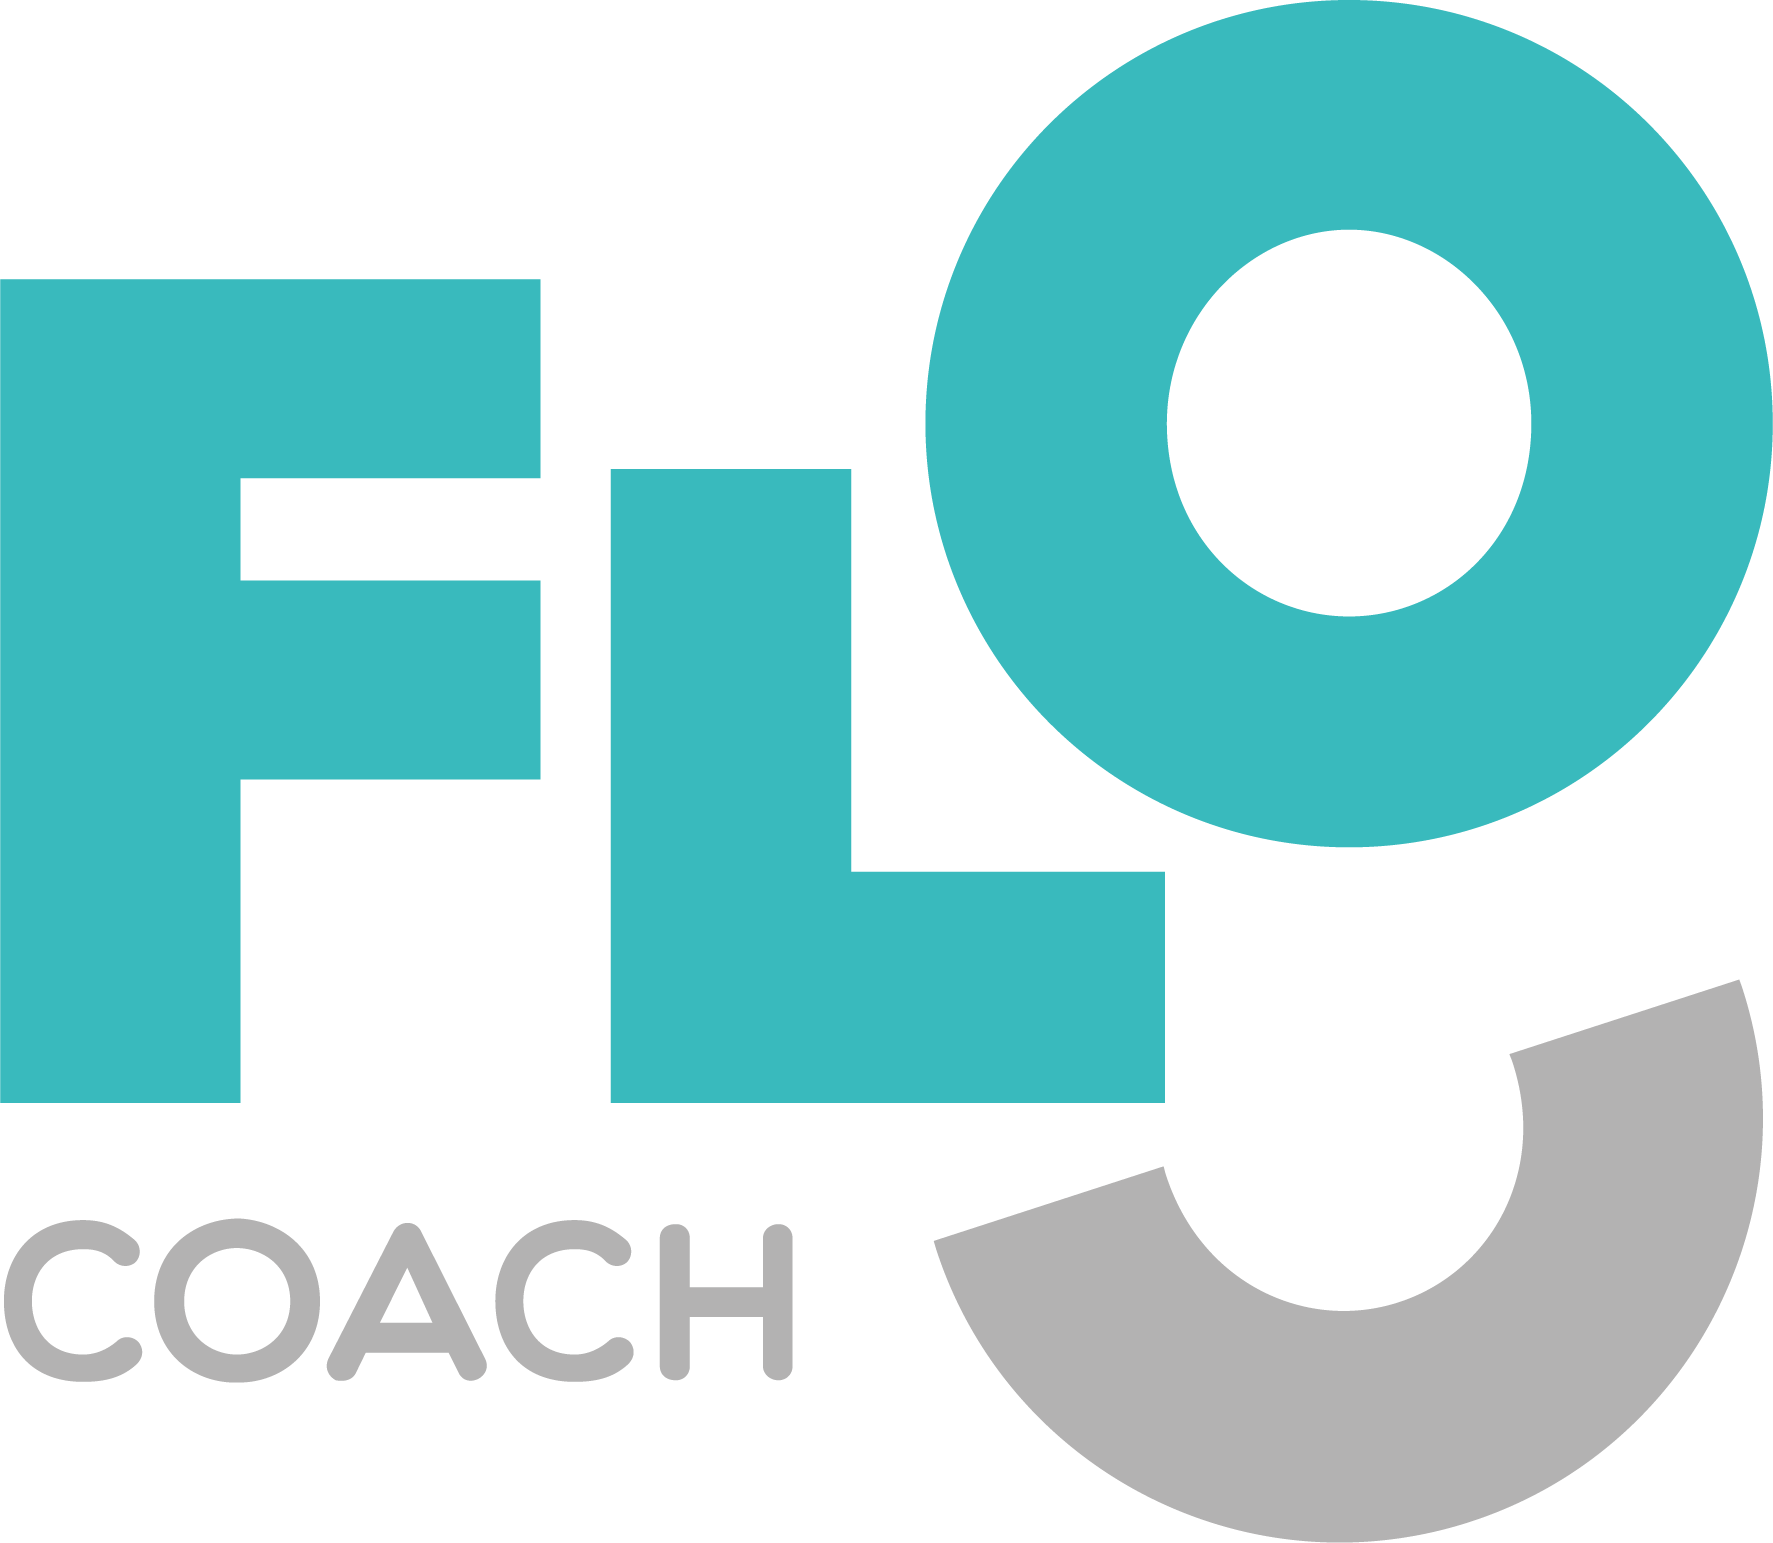 The Flo Coach logo